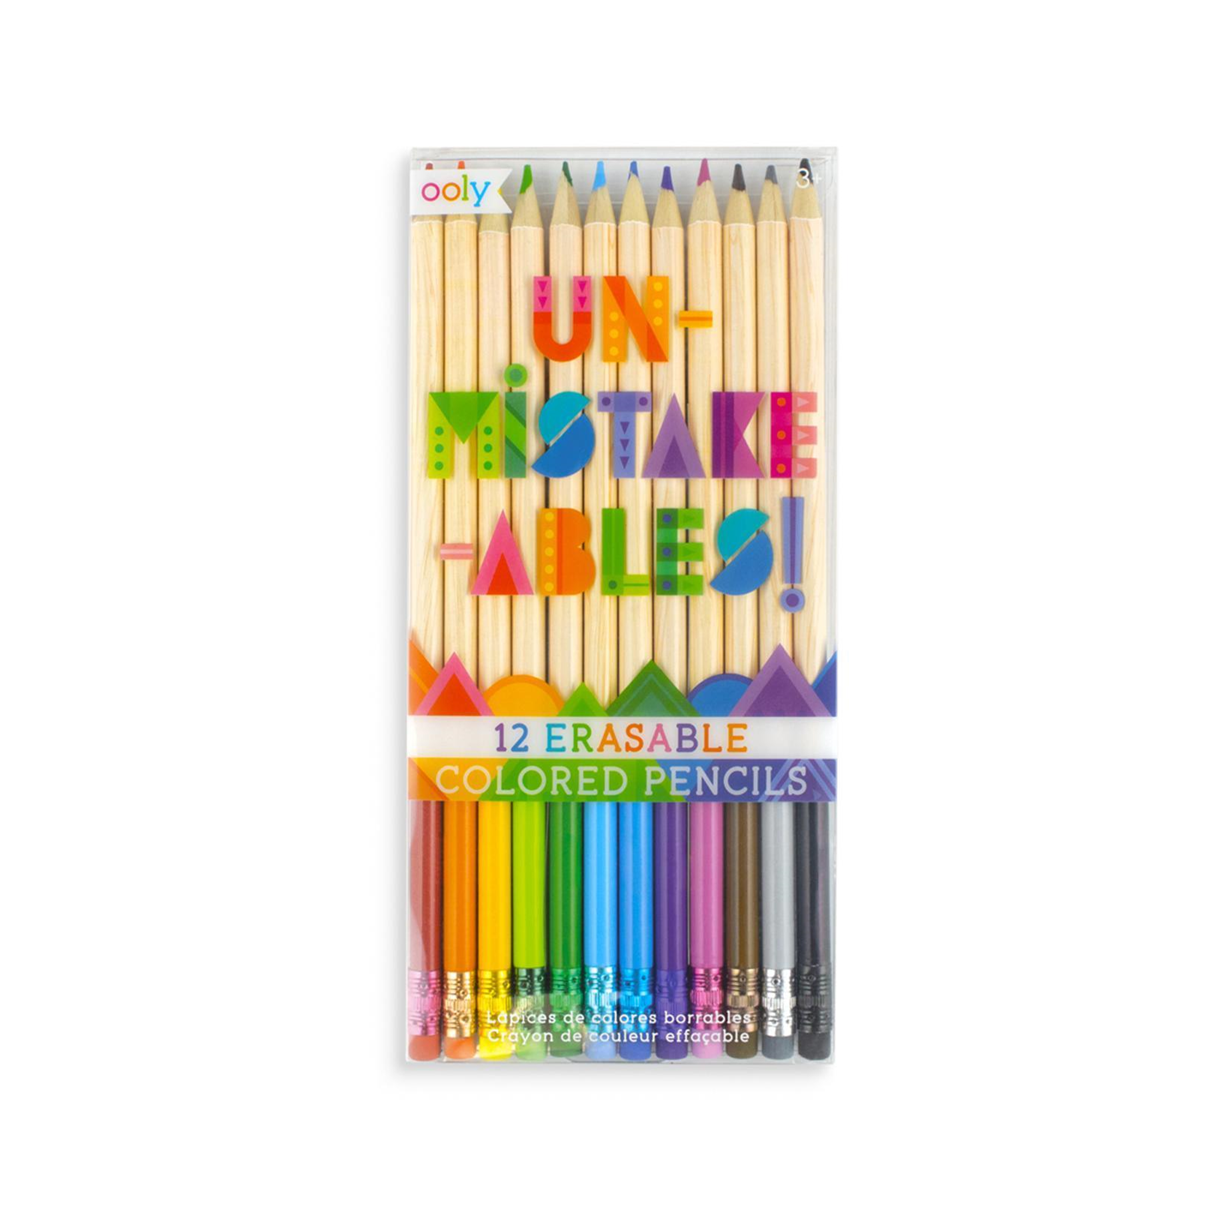 OOLY Un-mistakeables Erasable Colored Pencils